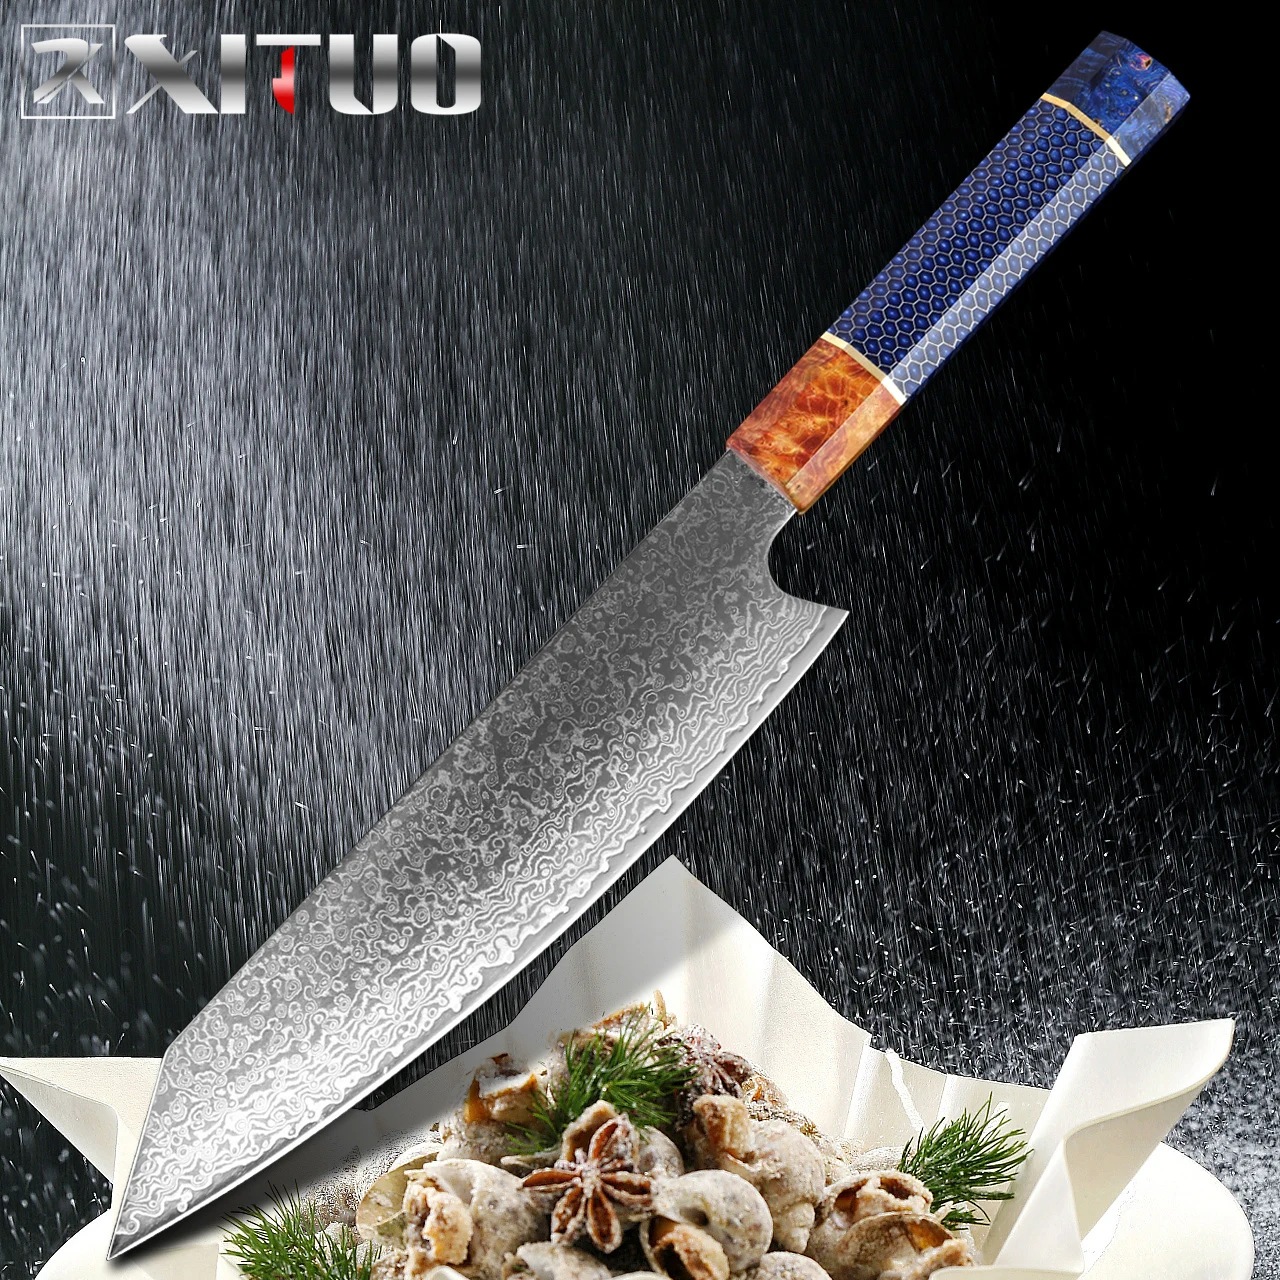 

XITUO дамасский кухонный нож шеф-повара 8 дюймов нож Kiritsuke 67 слоев VG10 стальная бритва острый Gyuto инструмент для нарезки мяса